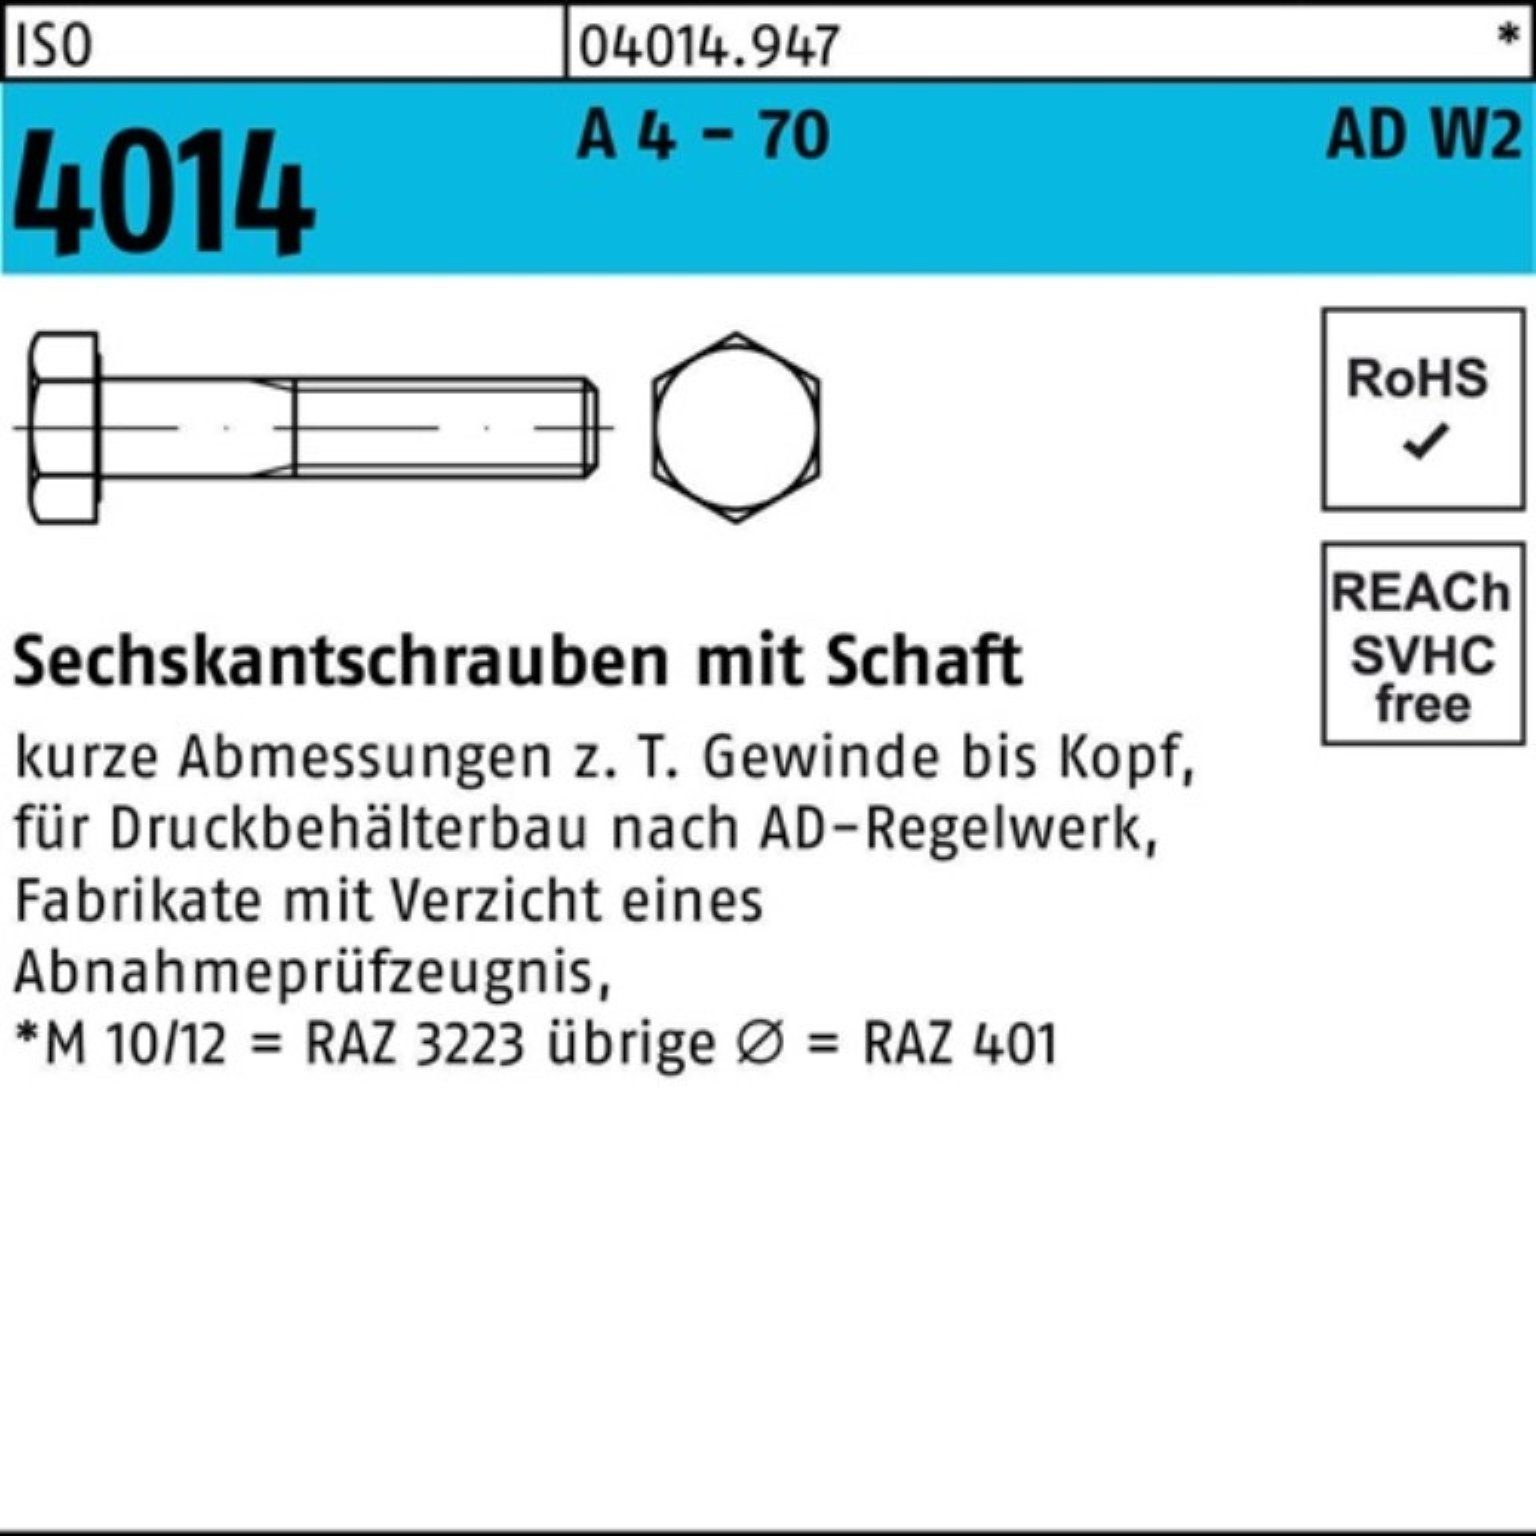 Bufab Sechskantschraube 100er Pack Sechskantschraube ISO 4014 Schaft M20x 90 A 4 - 70 AD-W2 25